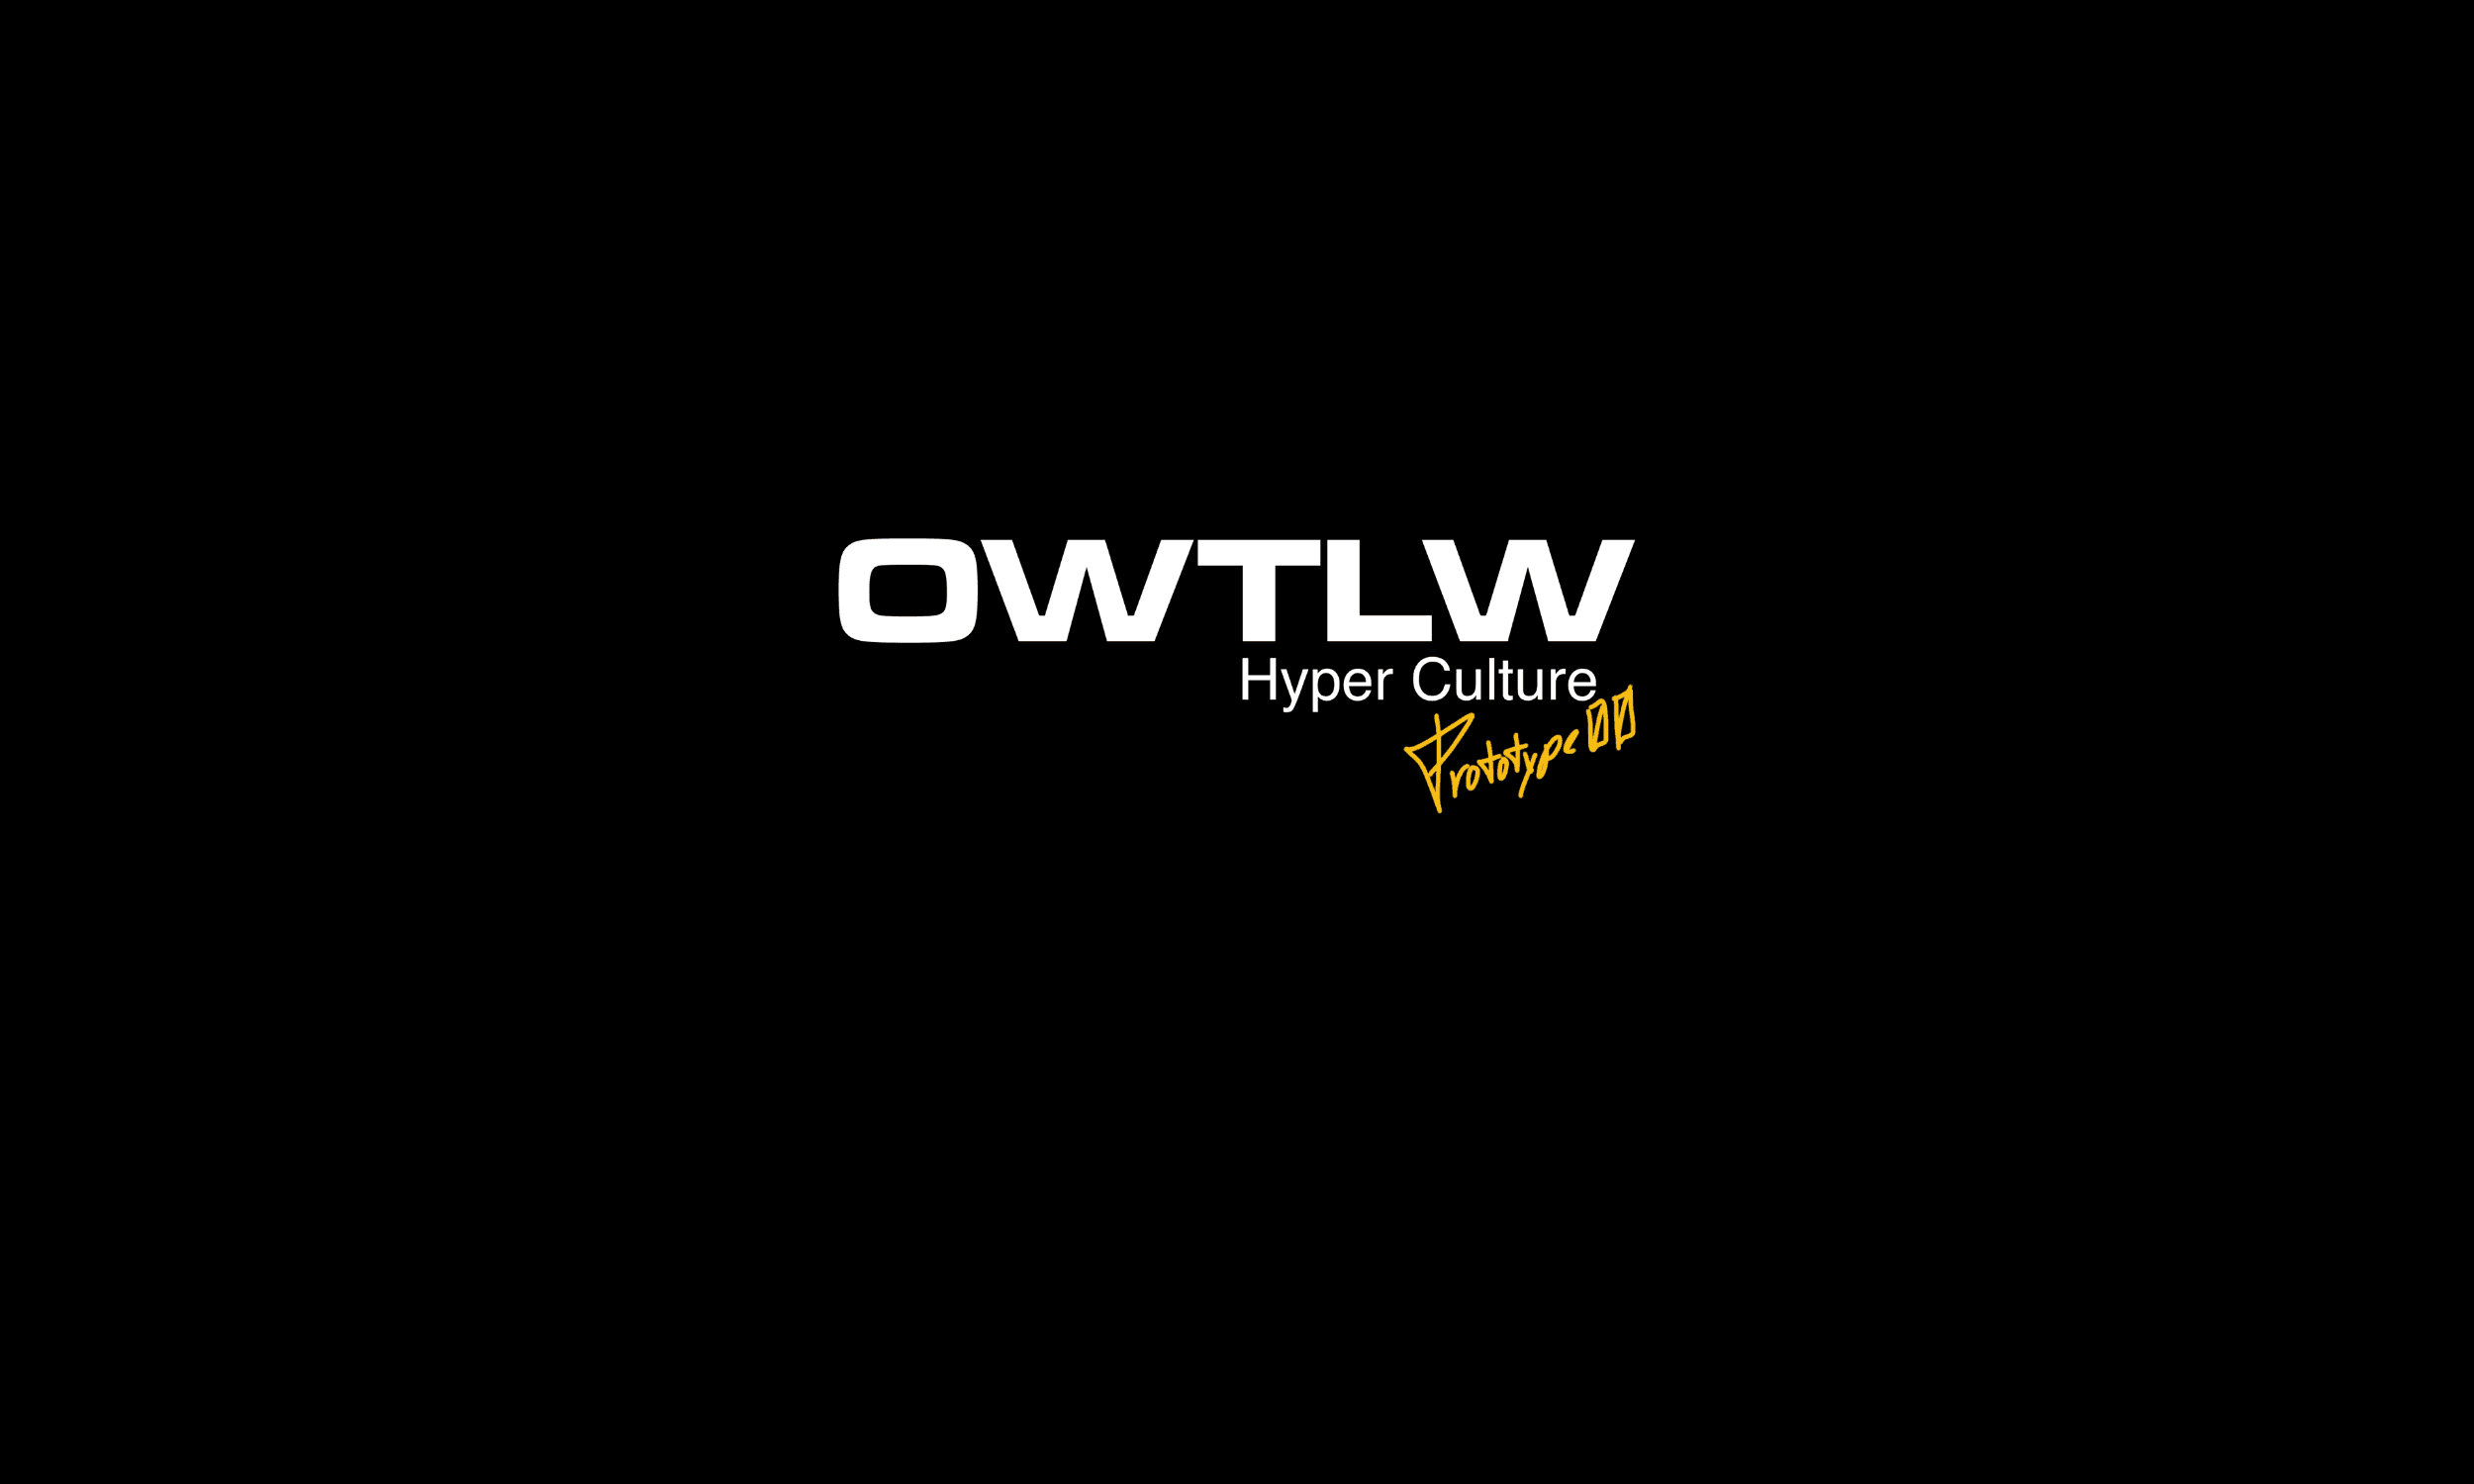 OWTLW_Hyper_Culture_00 banner